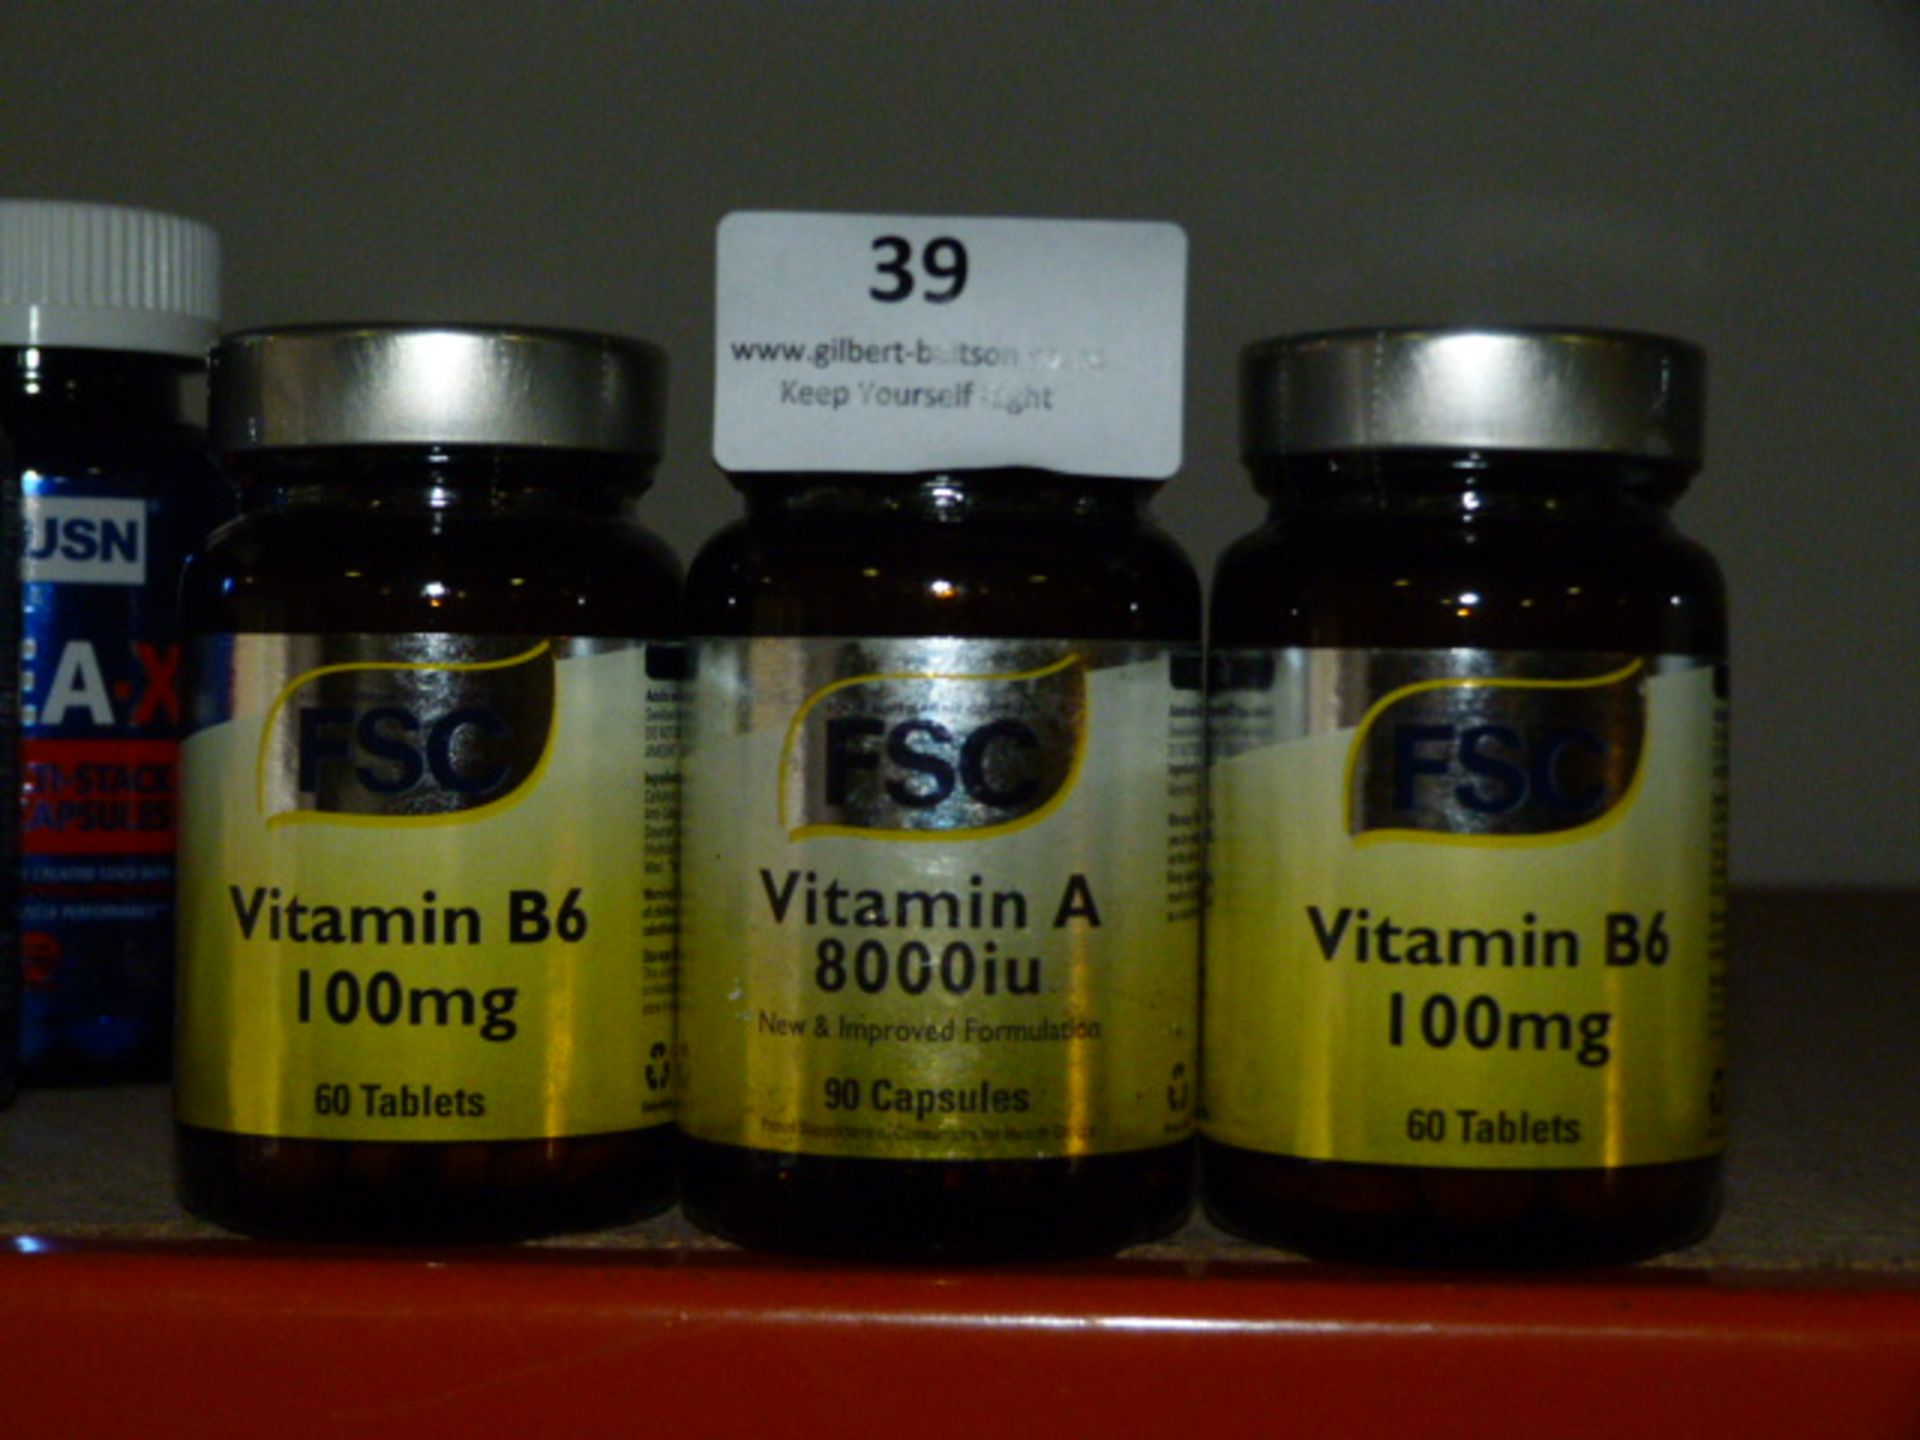 *3 x 60 Tablets of SFC Vitamin B6